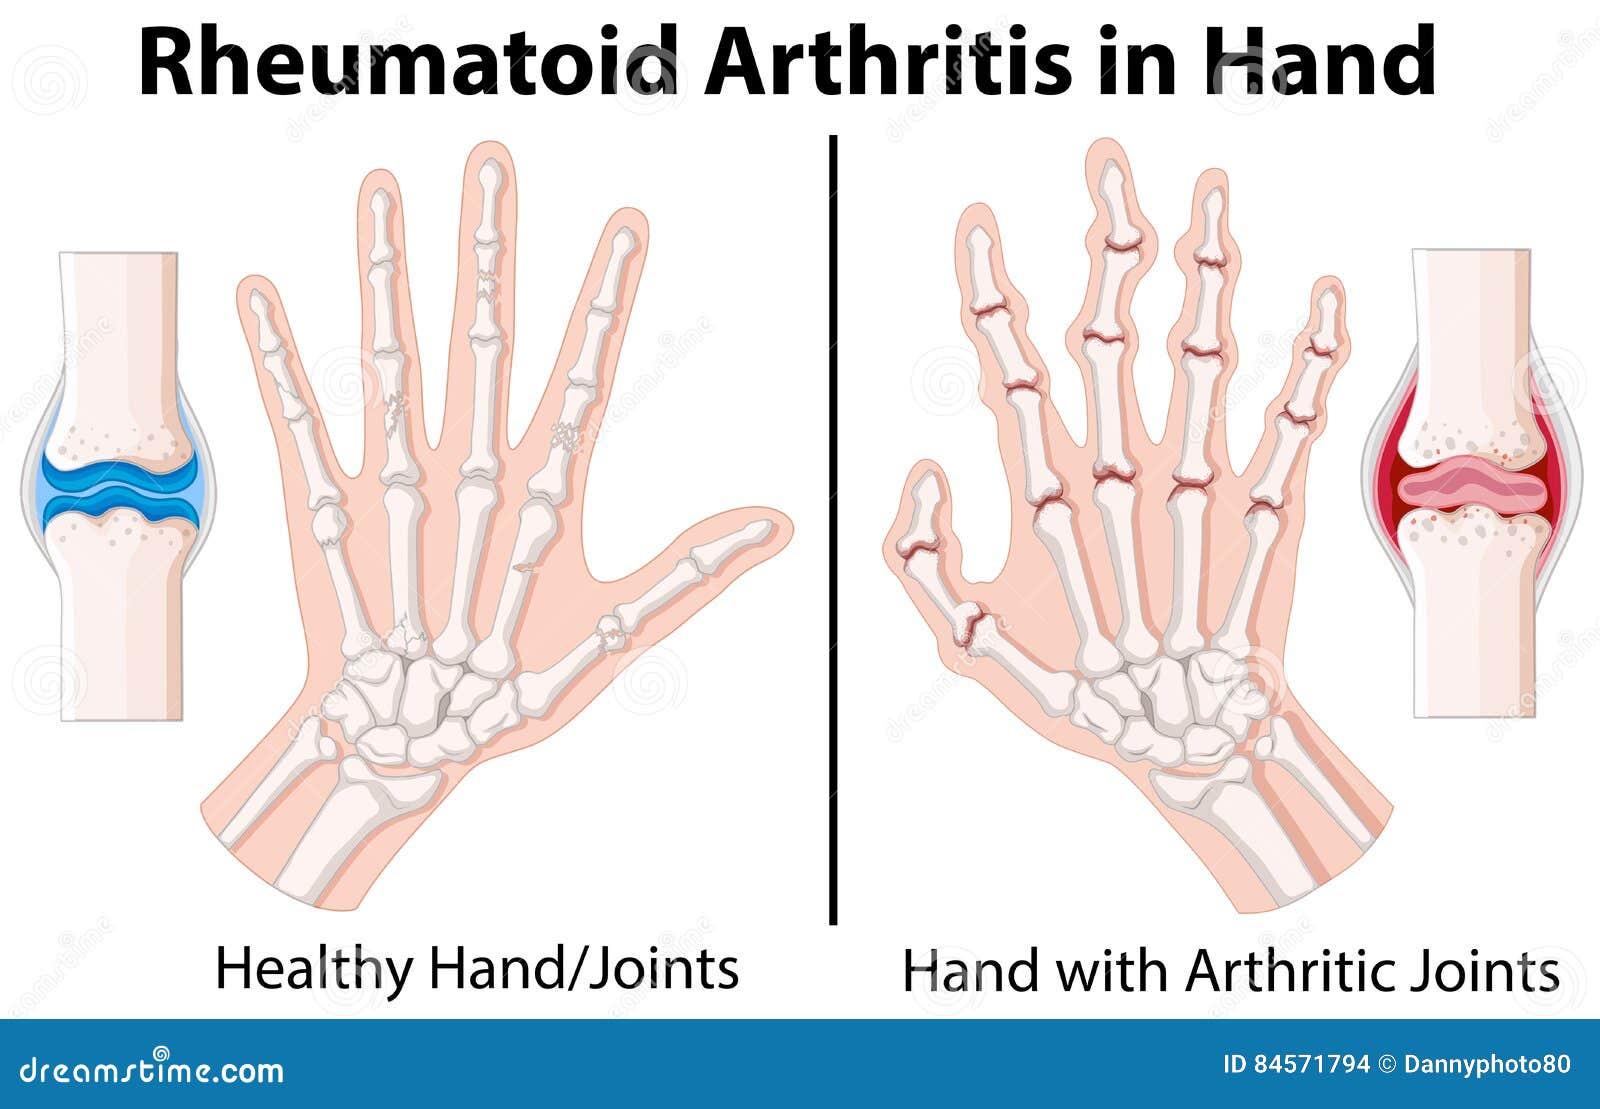 Rheumatoid Arthritis Chart